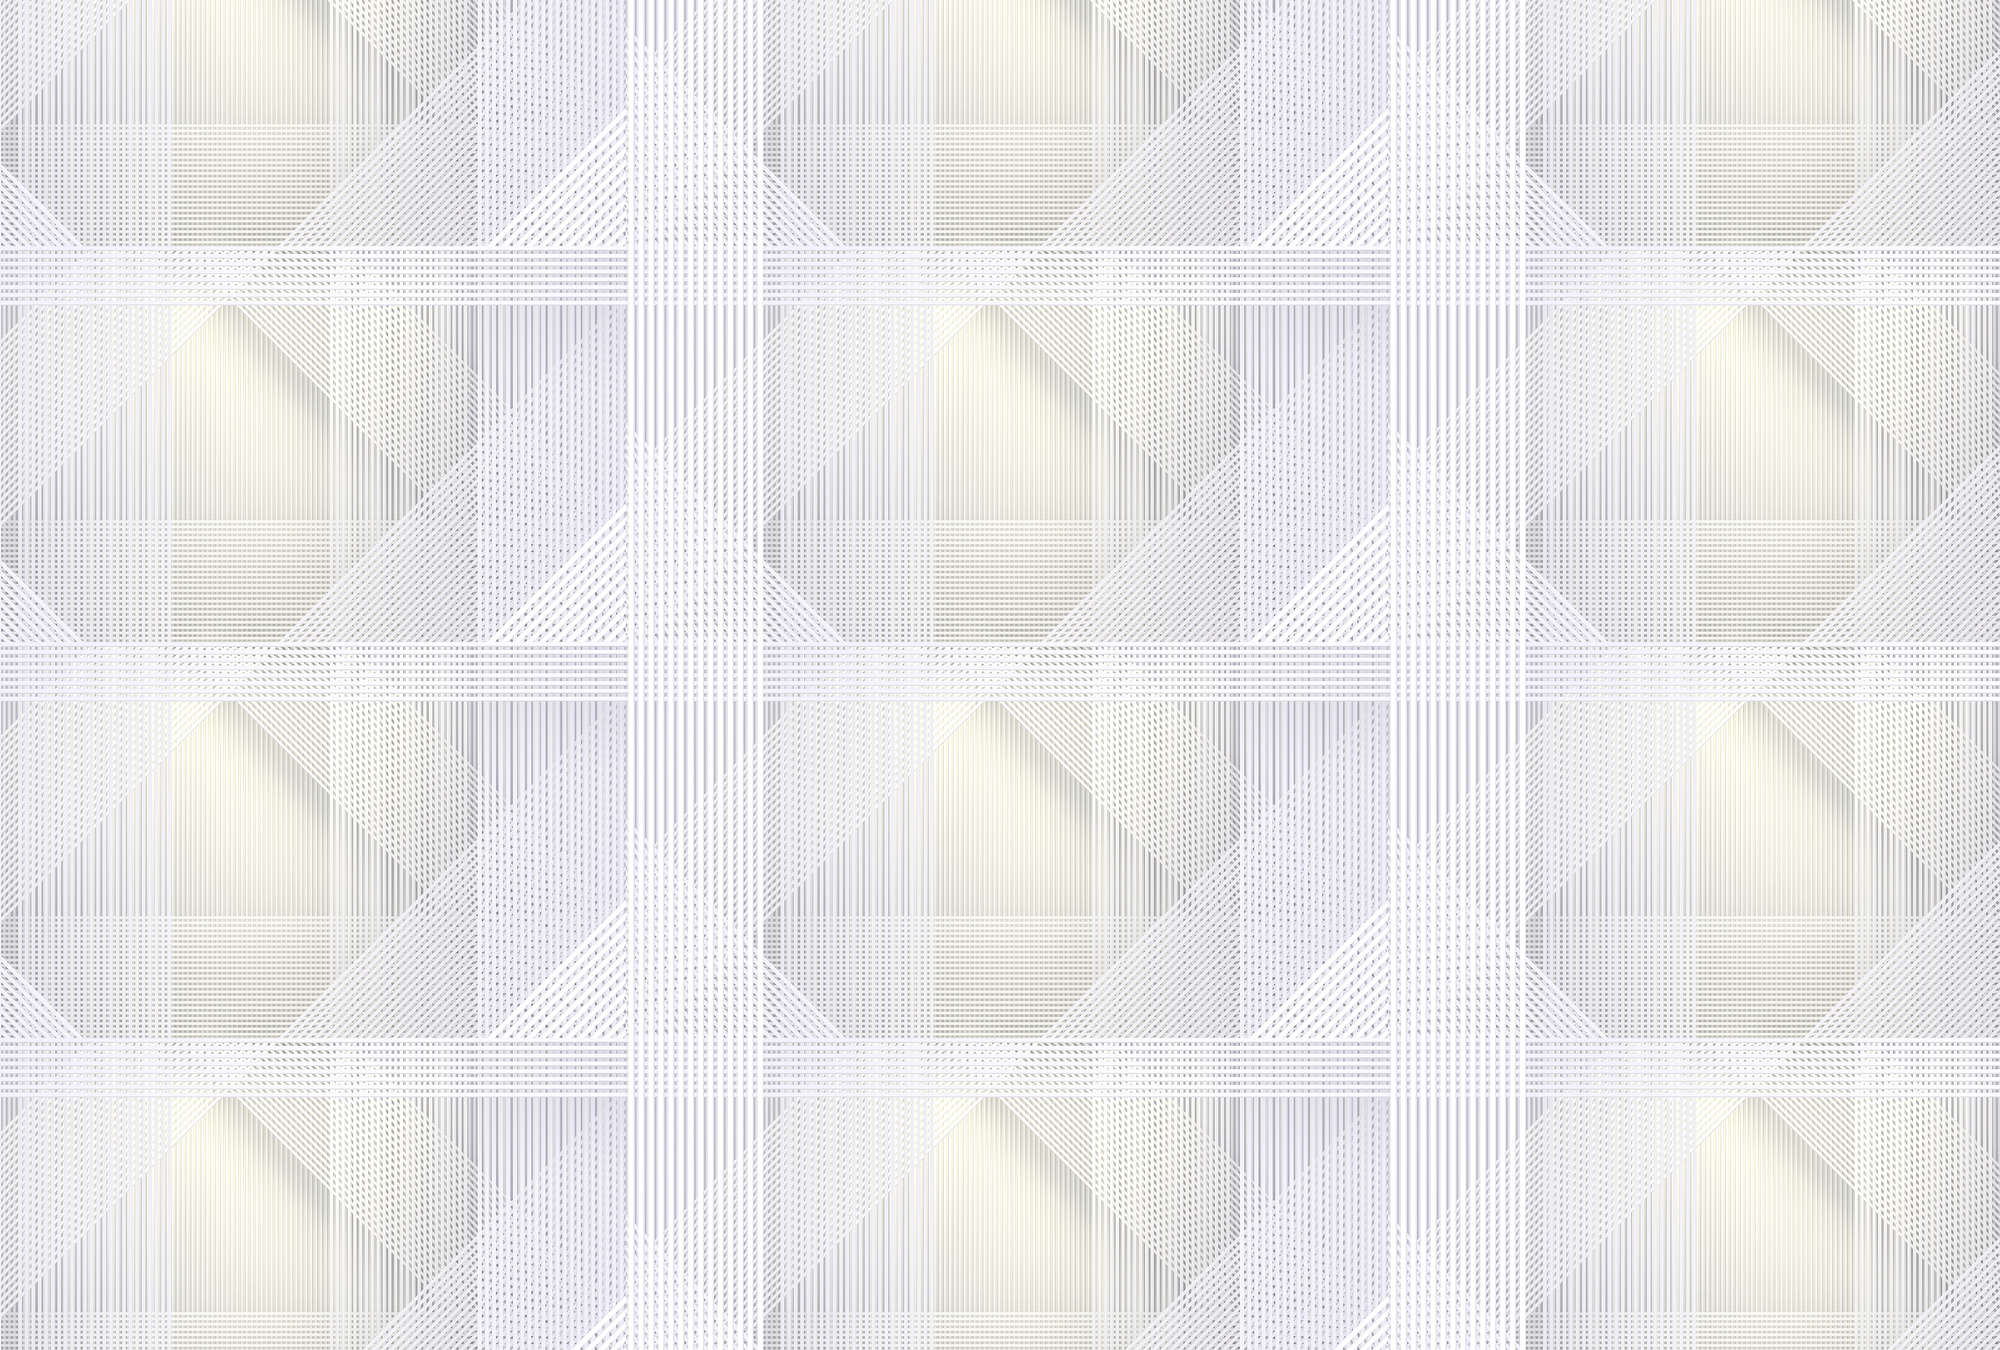             Strings 1 - Digital behang geometrisch streeppatroon - Geel, Grijs | Premium glad fleece
        